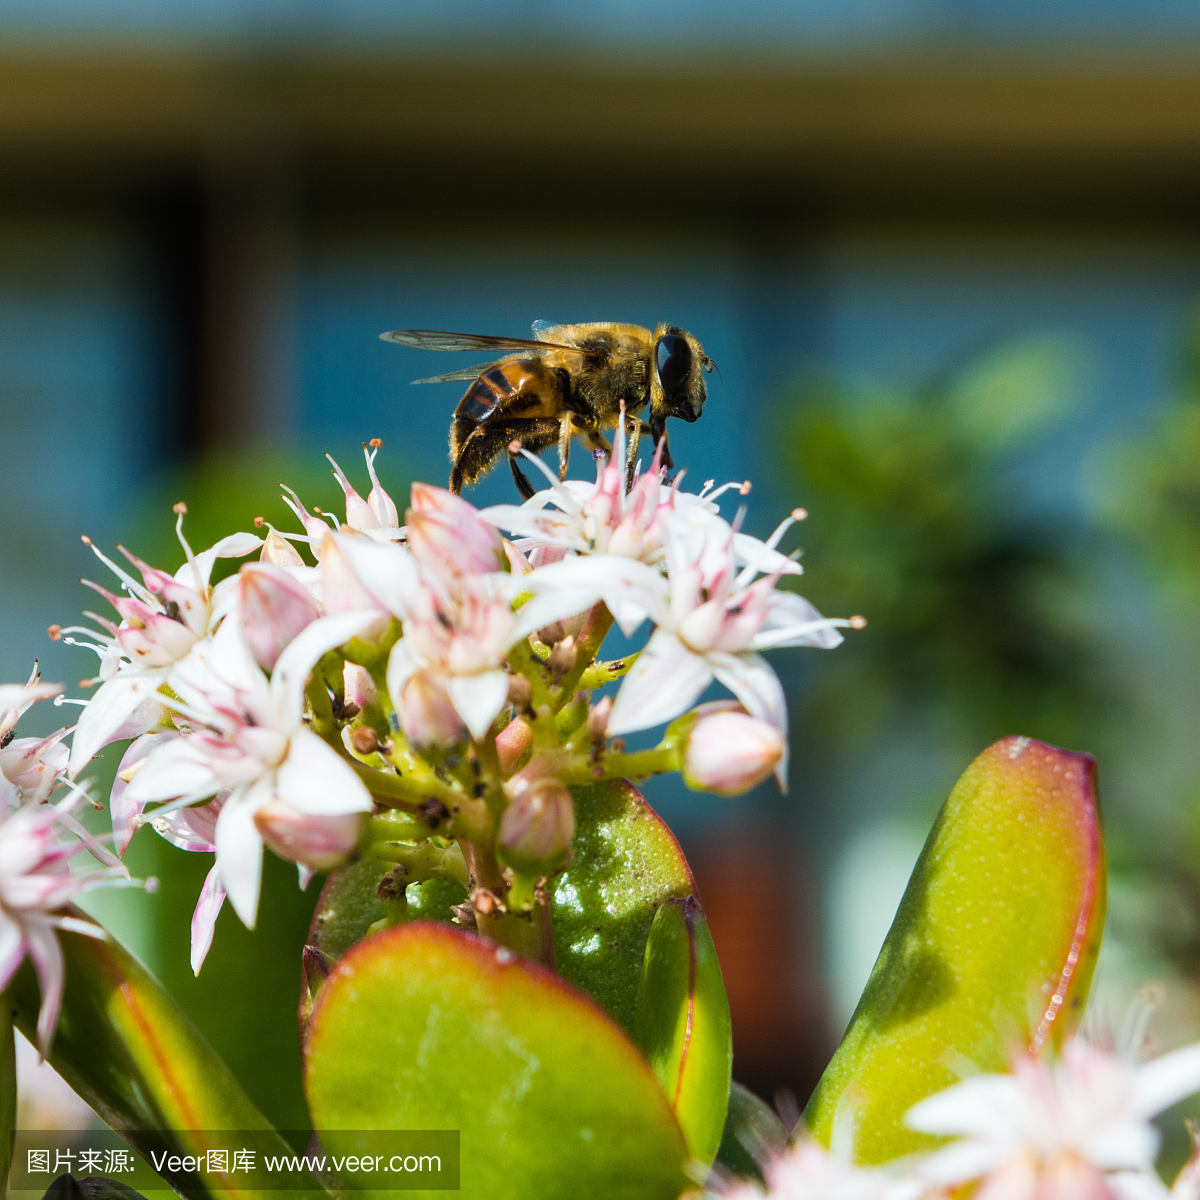 蜜蜂收集玉米植物花粉